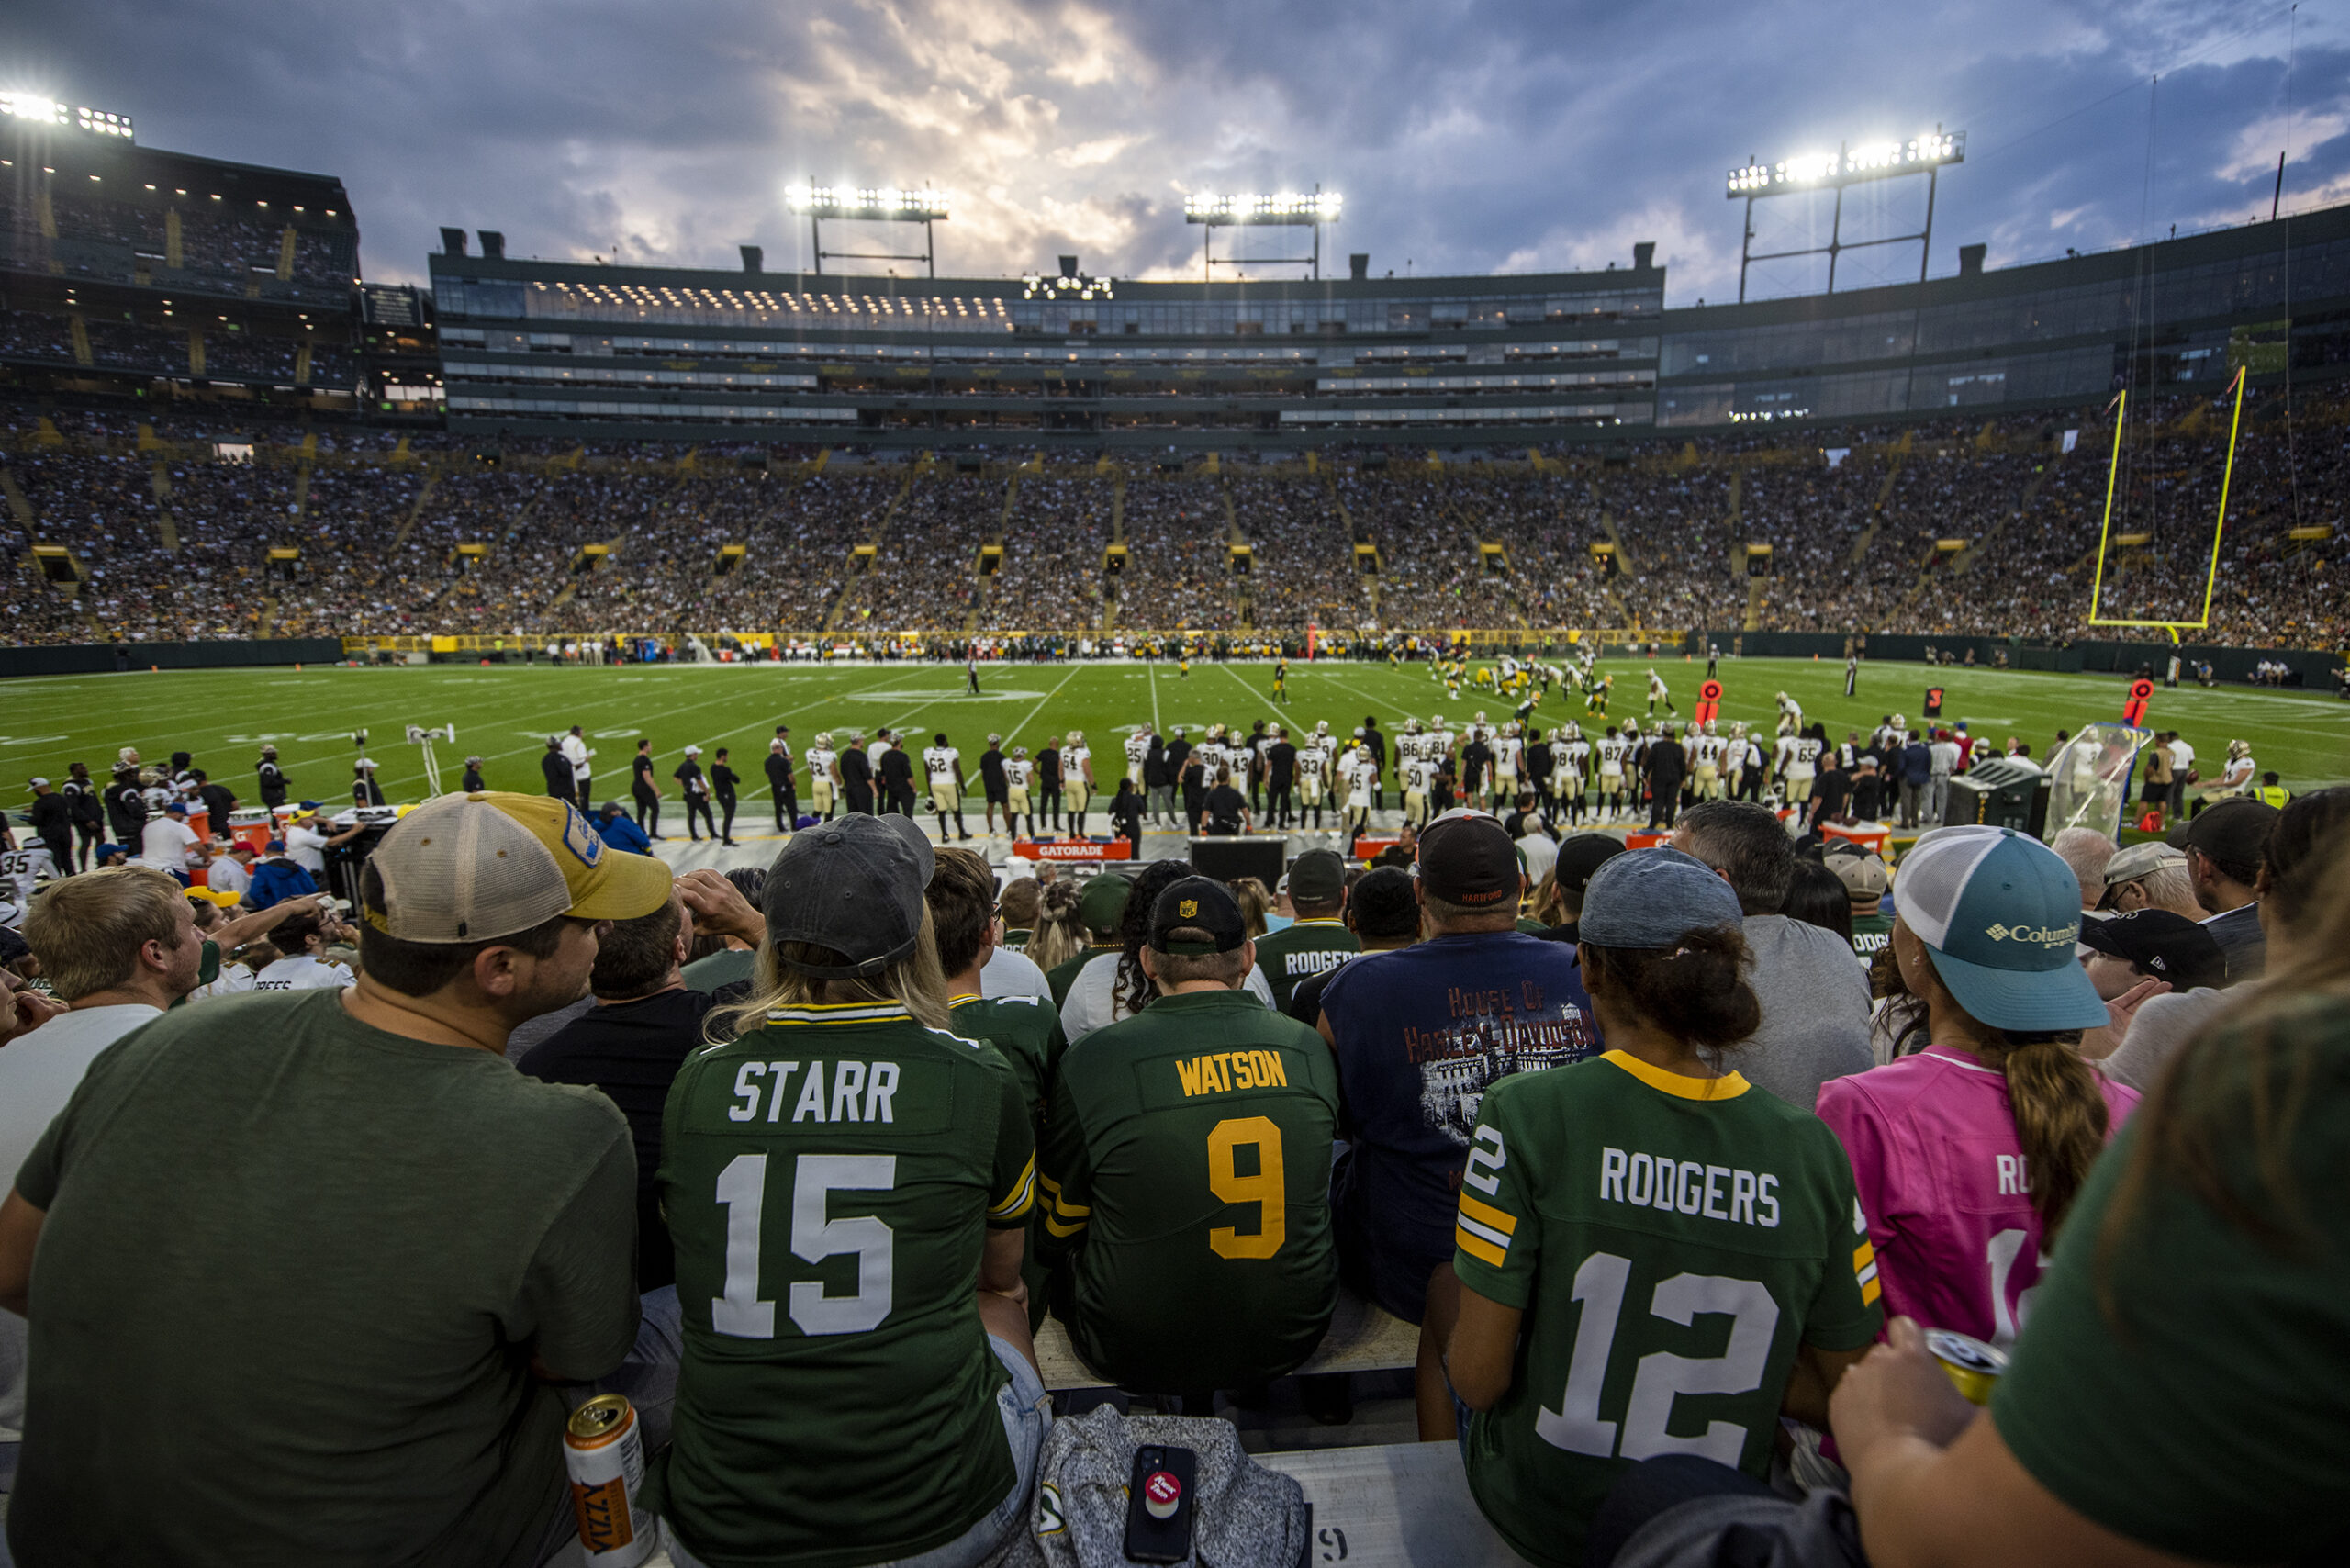 Packers fans wear player jerseys as they sit in Lambeau Field.